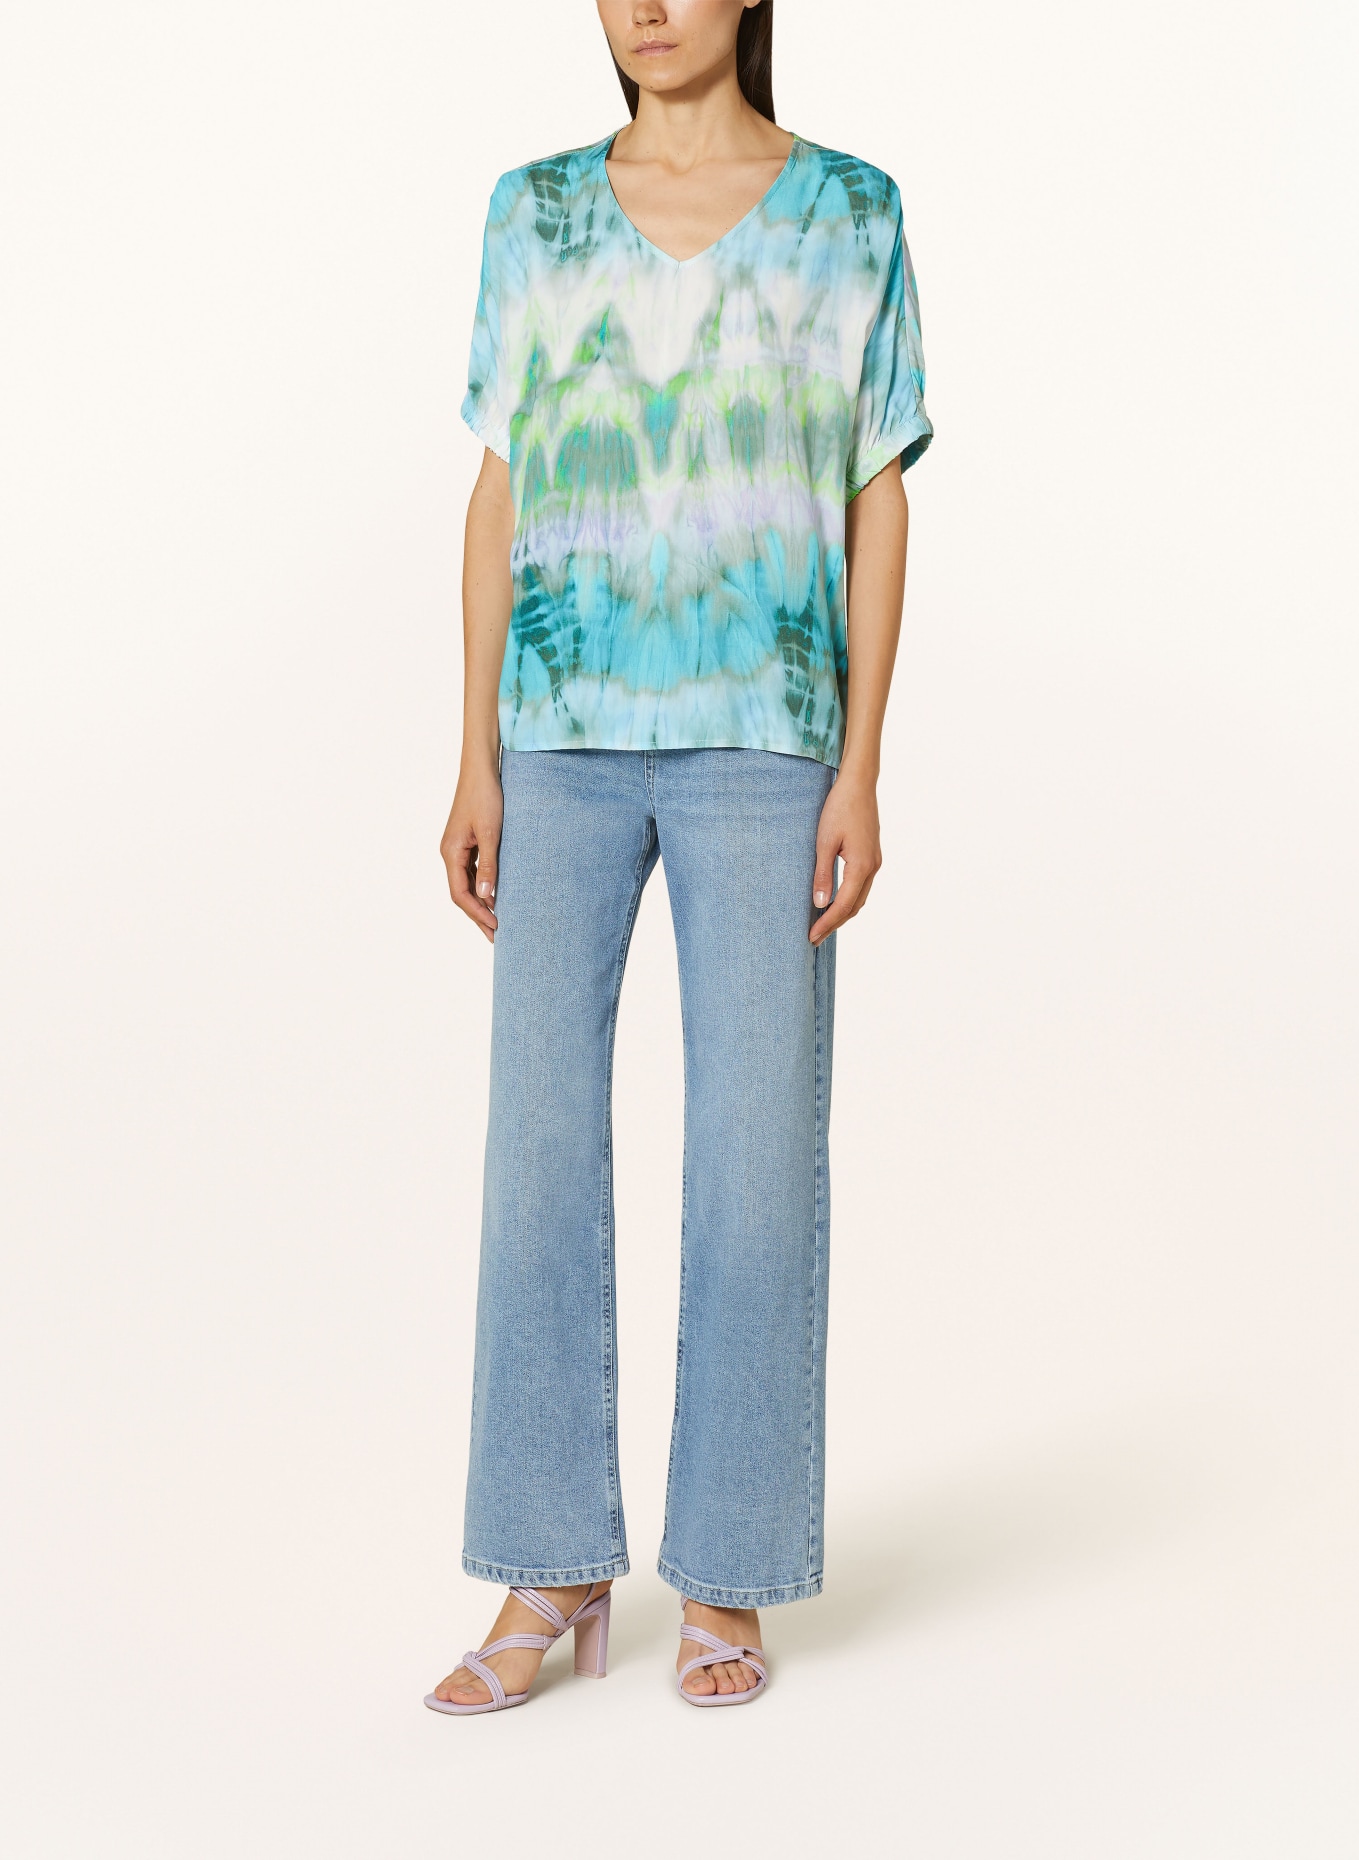 Emily VAN DEN BERGH Shirt blouse, Color: TURQUOISE/ LIGHT GREEN/ WHITE (Image 2)